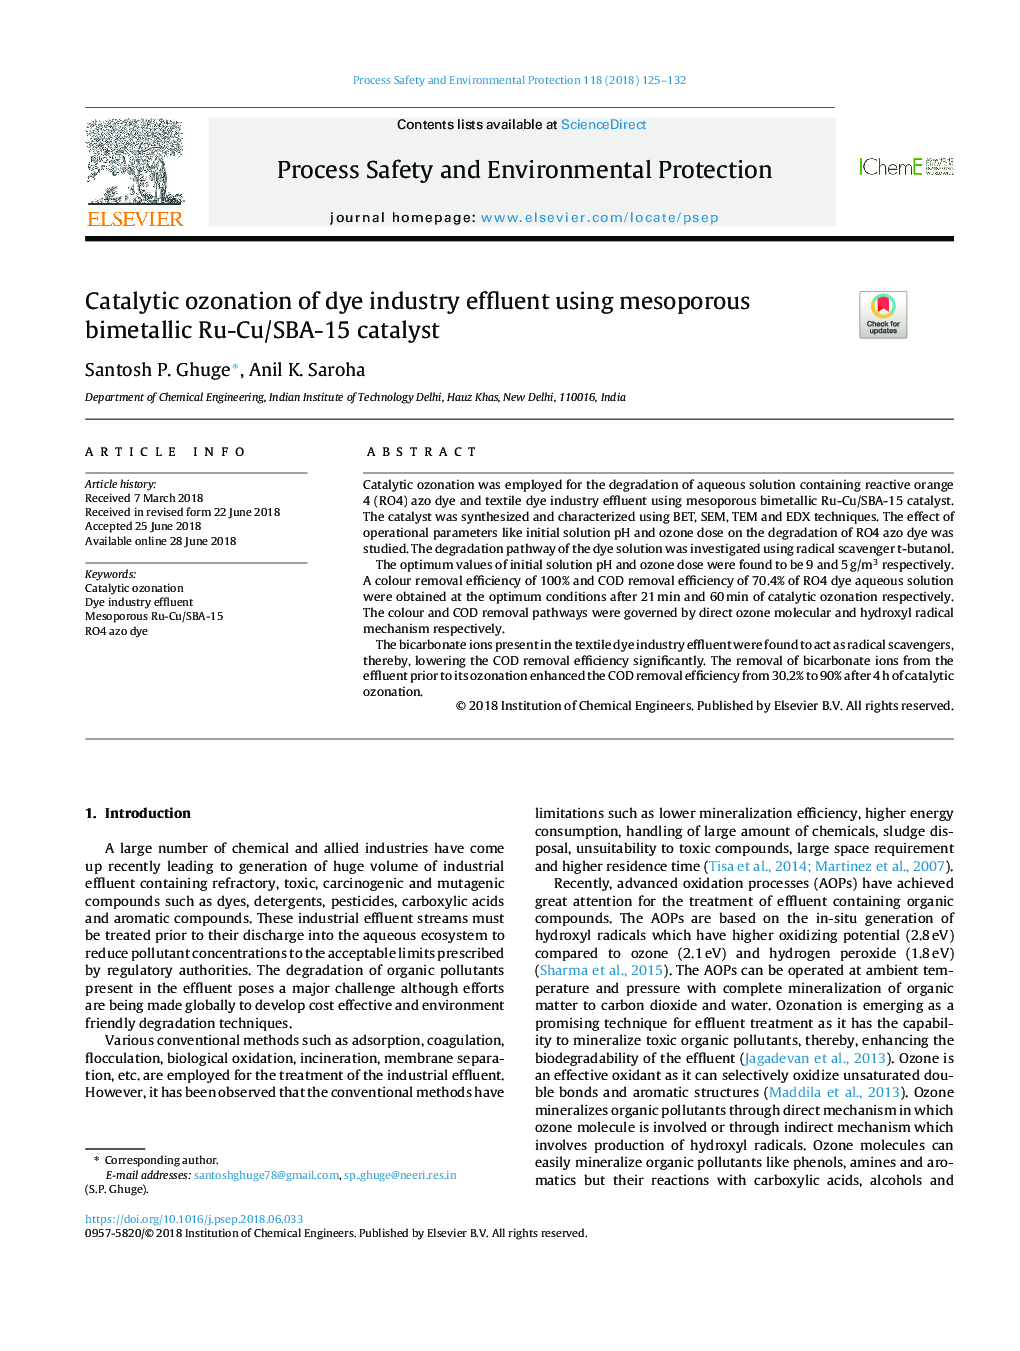 Catalytic ozonation of dye industry effluent using mesoporous bimetallic Ru-Cu/SBA-15 catalyst